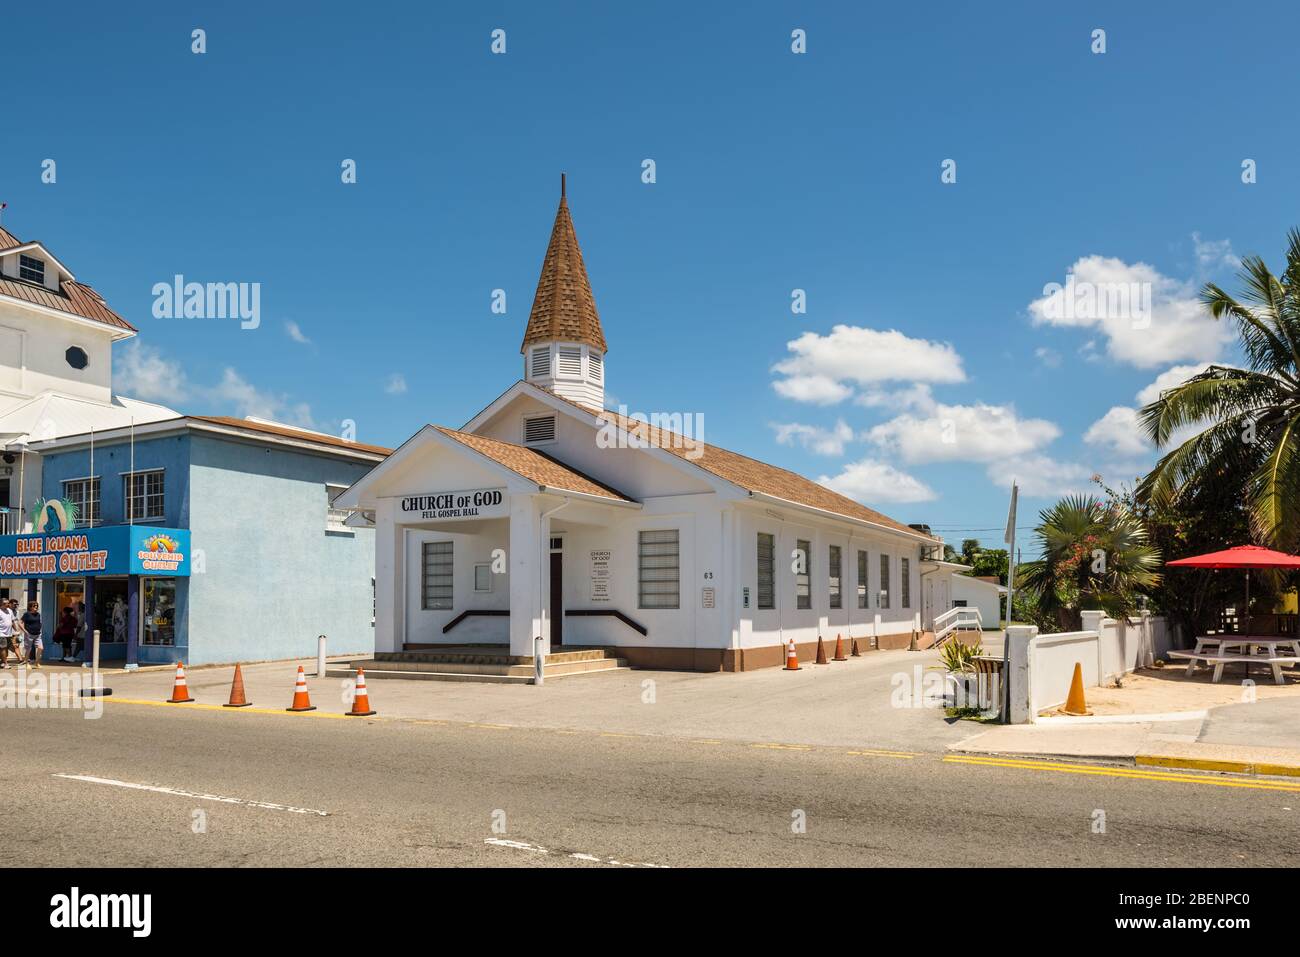 George Town, Grand Cayman Island, Royaume-Uni - 23 avril 2019 : l'Église de Dieu salle de l'Évangile complet dans le centre-ville de George Town, Grand Cayman, îles Caïmanes, Briti Banque D'Images